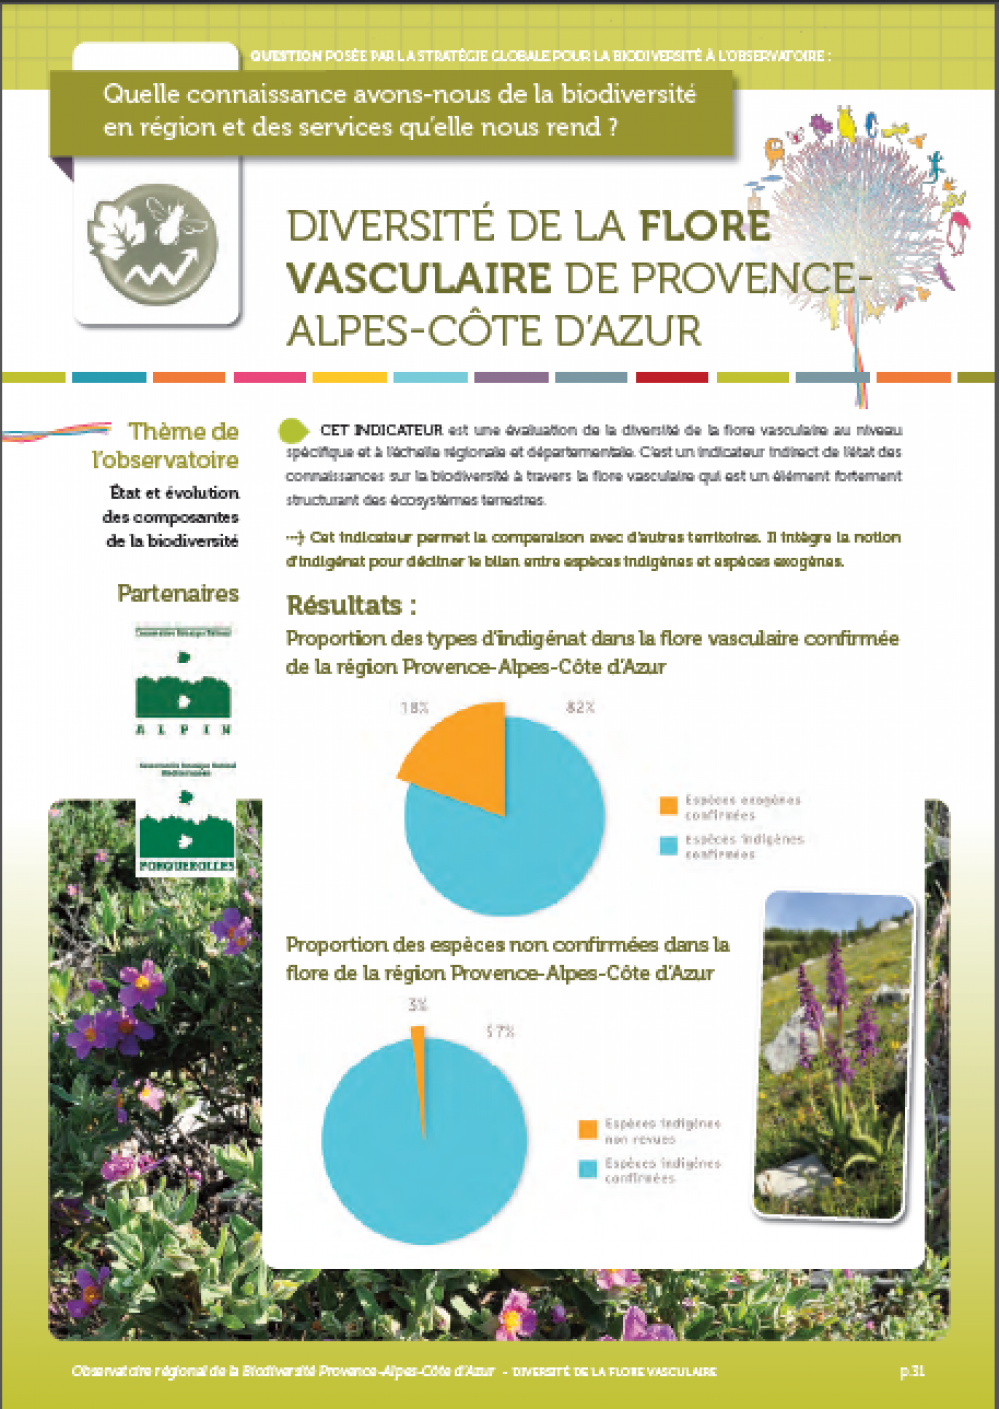 Diversité de la flore vasculaire de Provence-Alpes Côte d'Azur